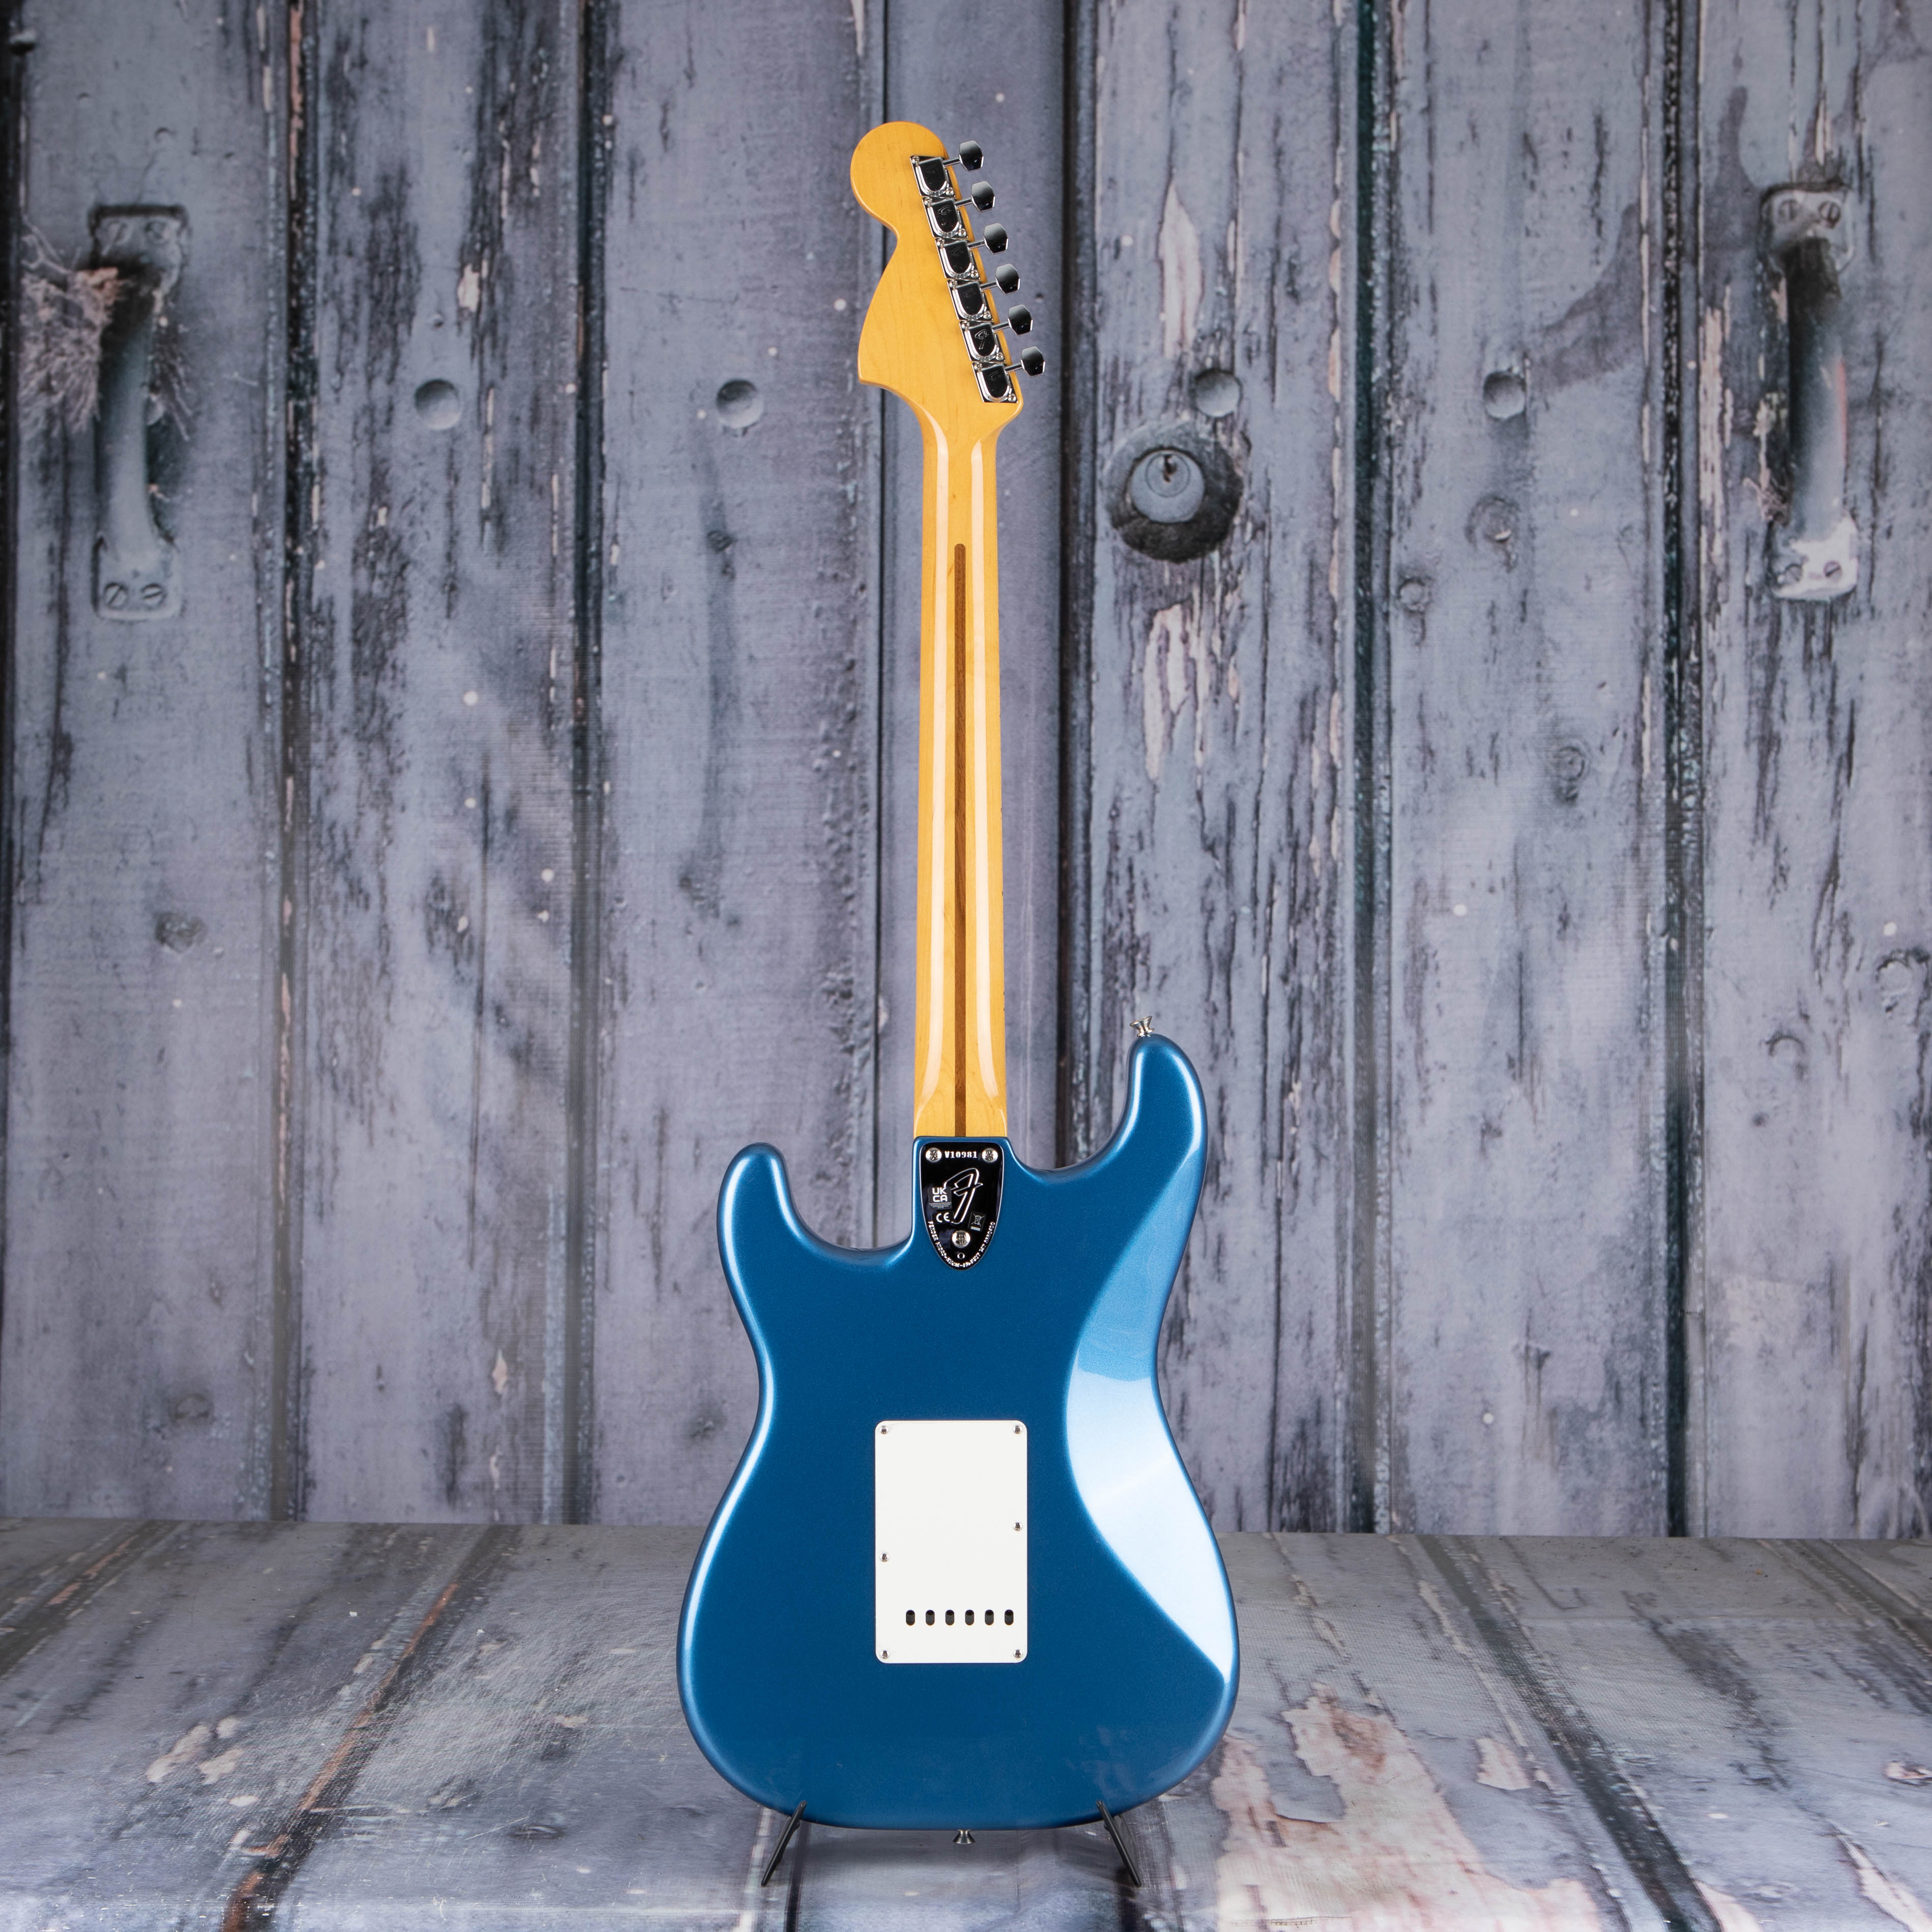 Fender American Vintage II 1973 Stratocaster Electric Guitar, Lake Placid Blue, back